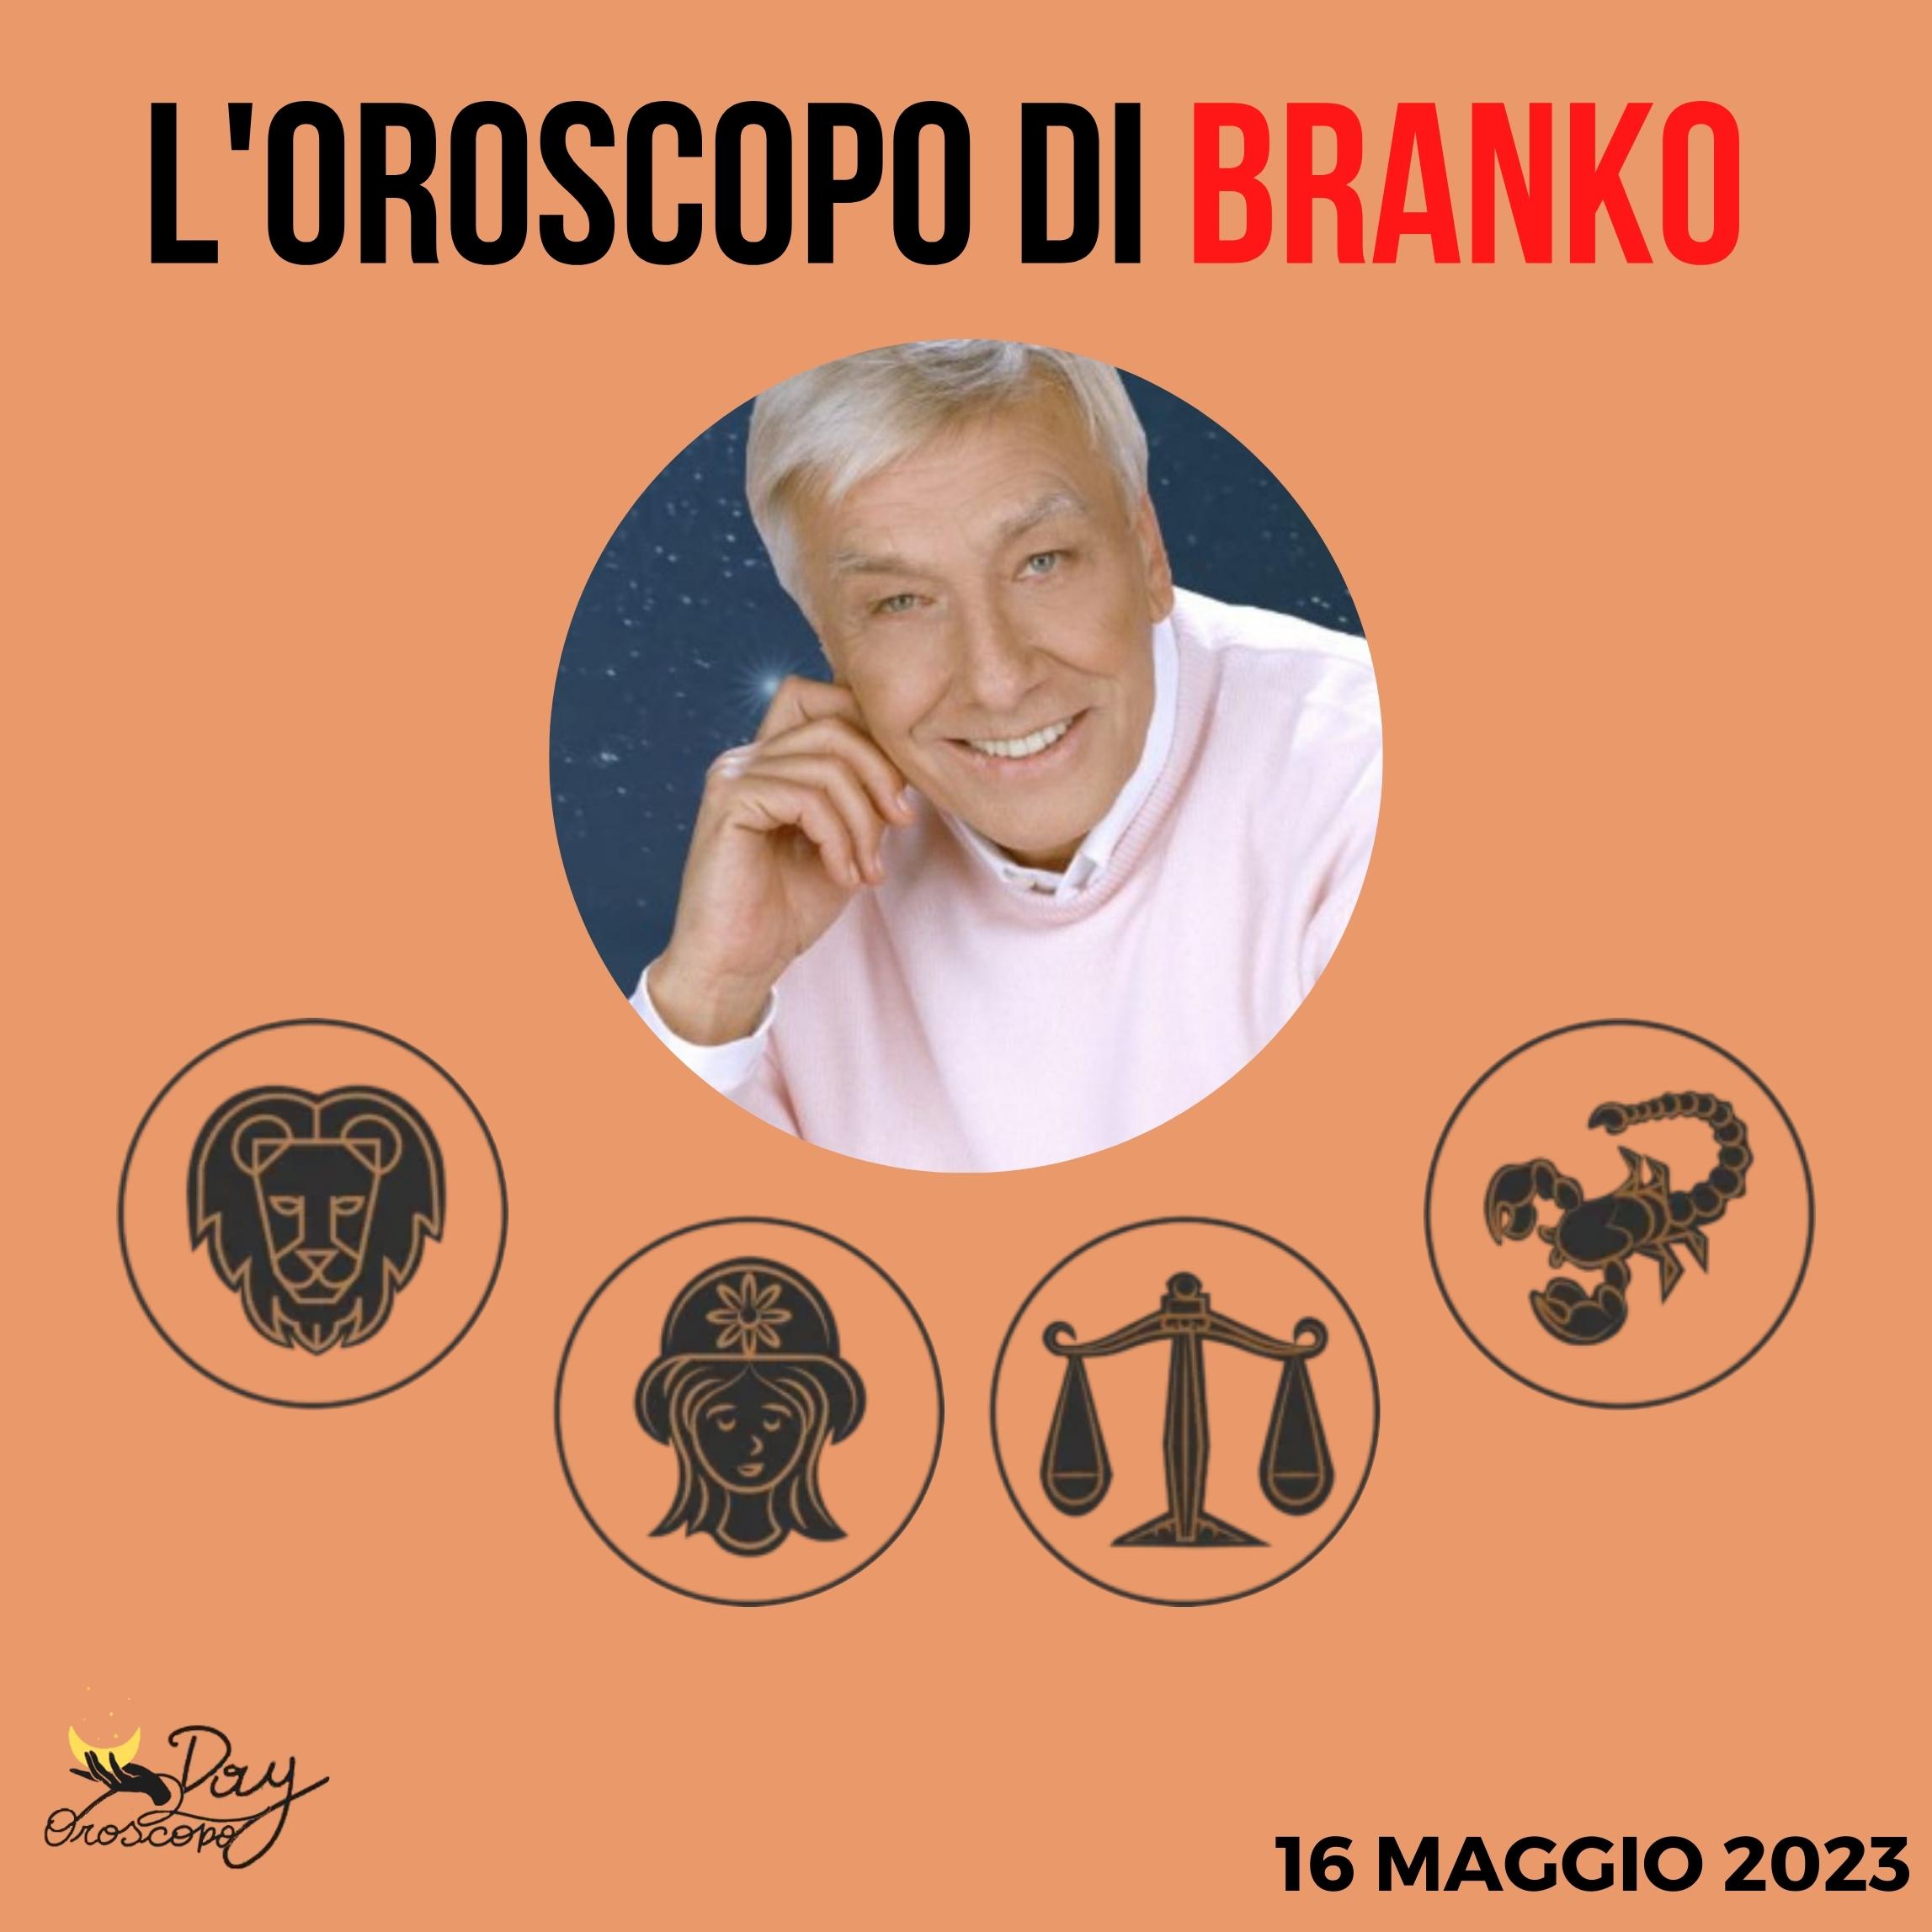 Oroscopo oggi domani Branko 16 maggio Leone Vergine Bilancia Scorpione